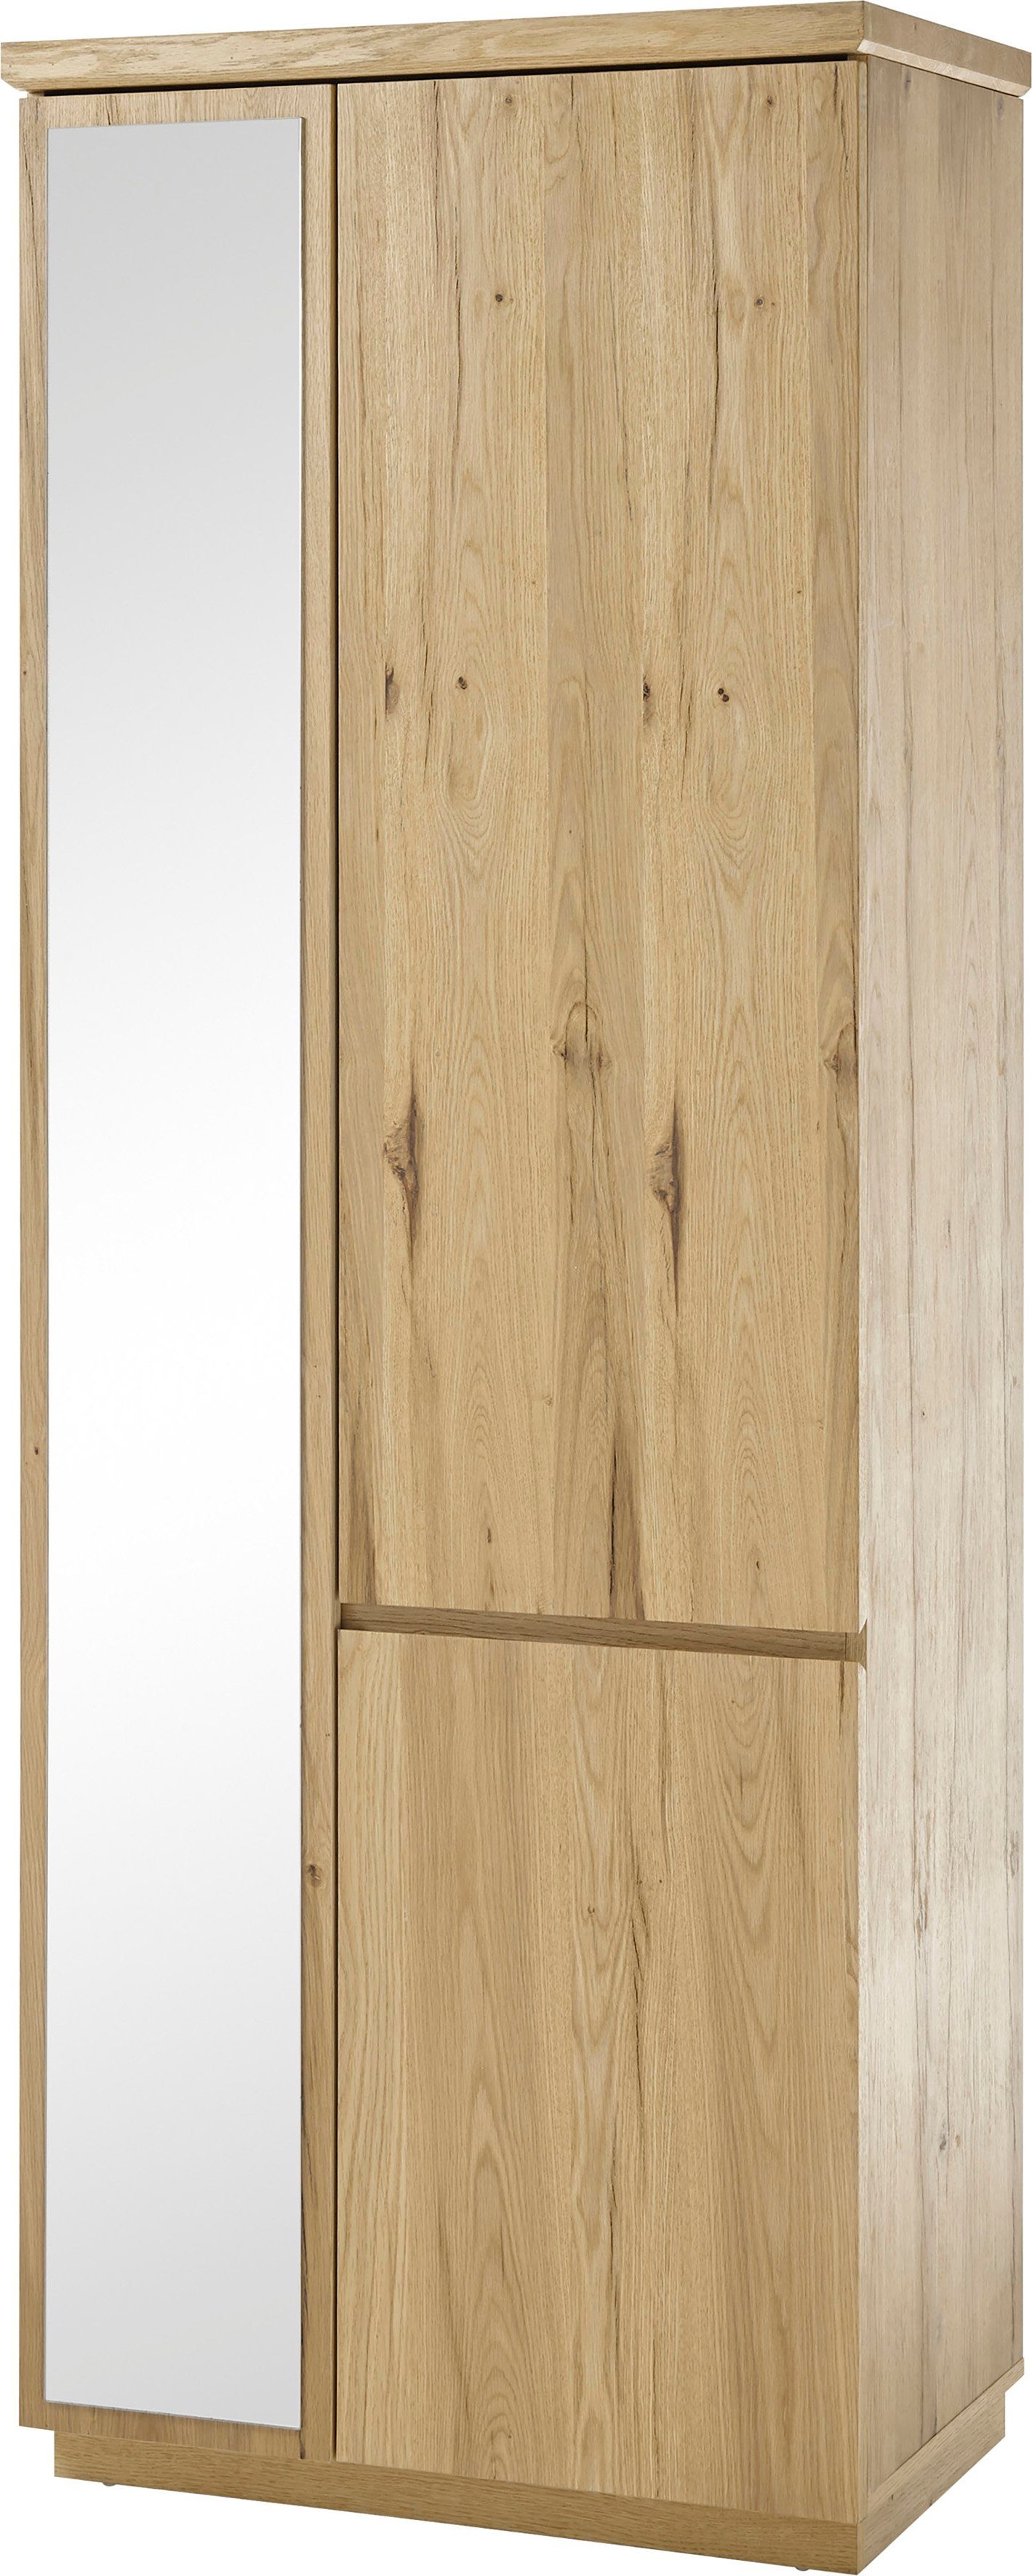 MCA furniture Garderobenschrank Yorkshire Breite ca. 75 cm,  Garderobenhochschrank mit 3 Türen